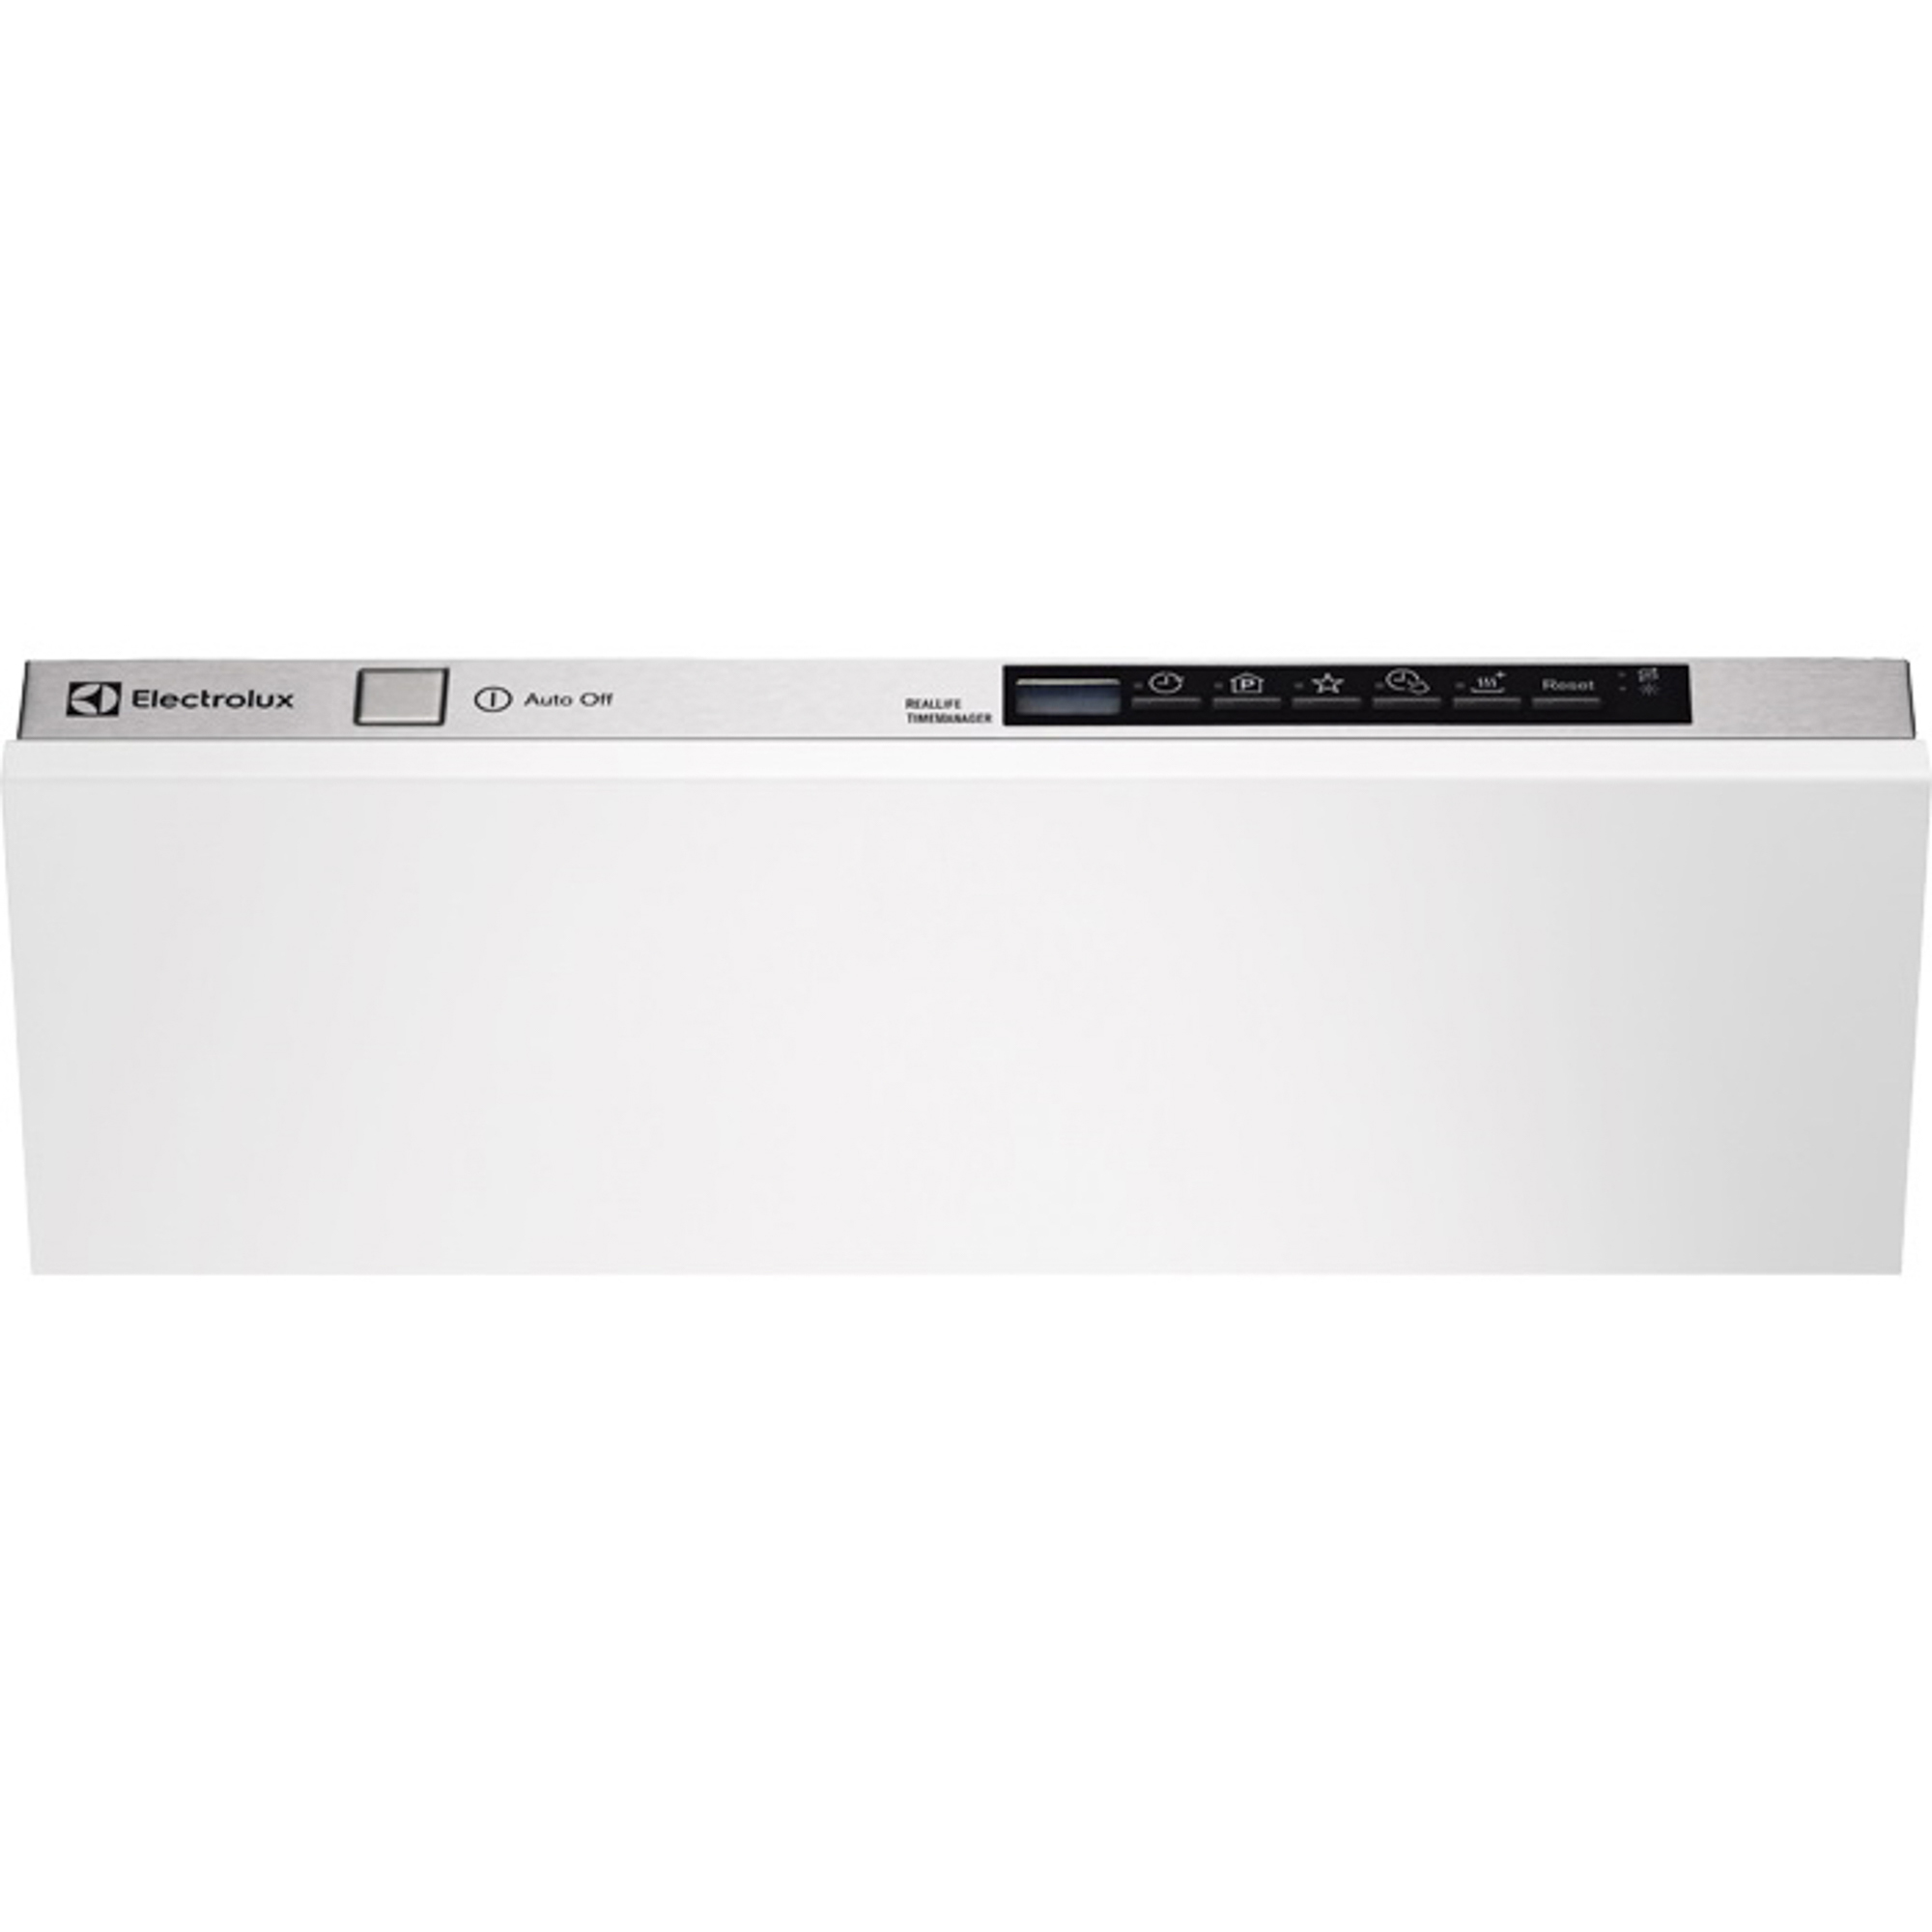 Посудомоечная машина Electrolux ESL9458RO, цвет белый - фото 5